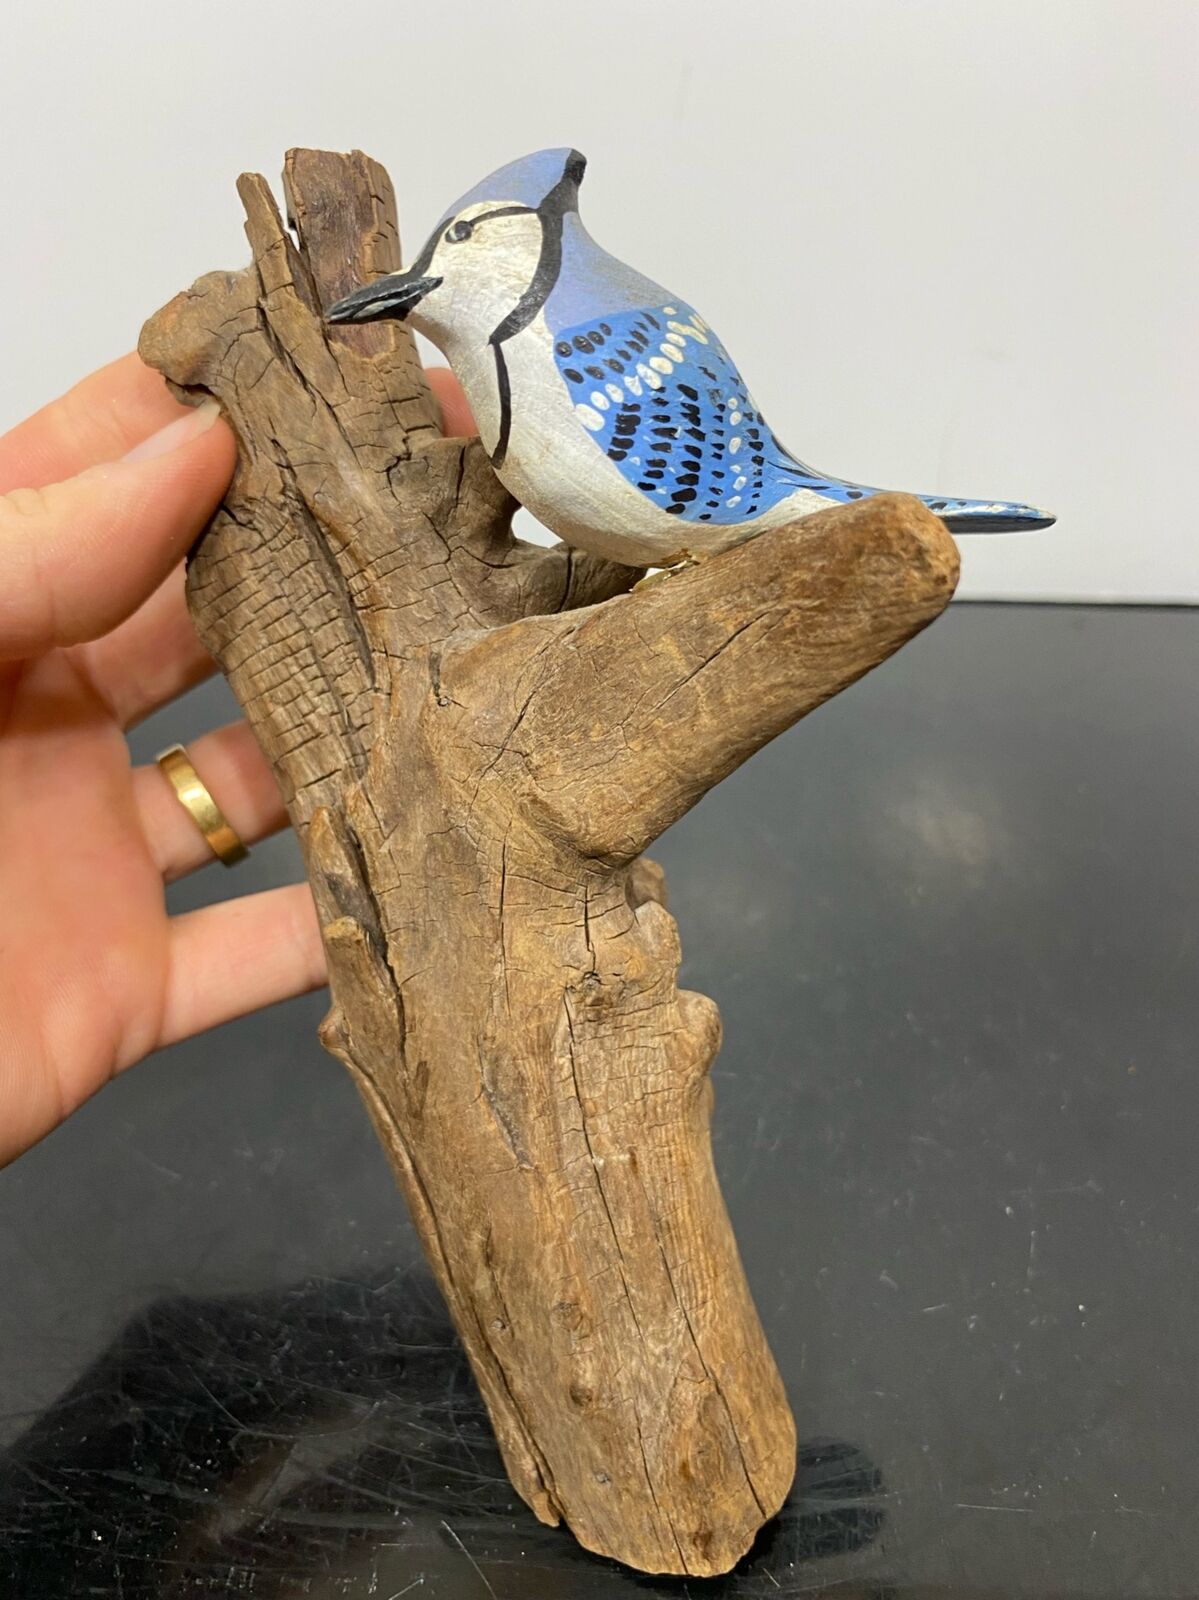 Vtg Hand Painted Carved Wood Bird Art Statue Figurine On Stump